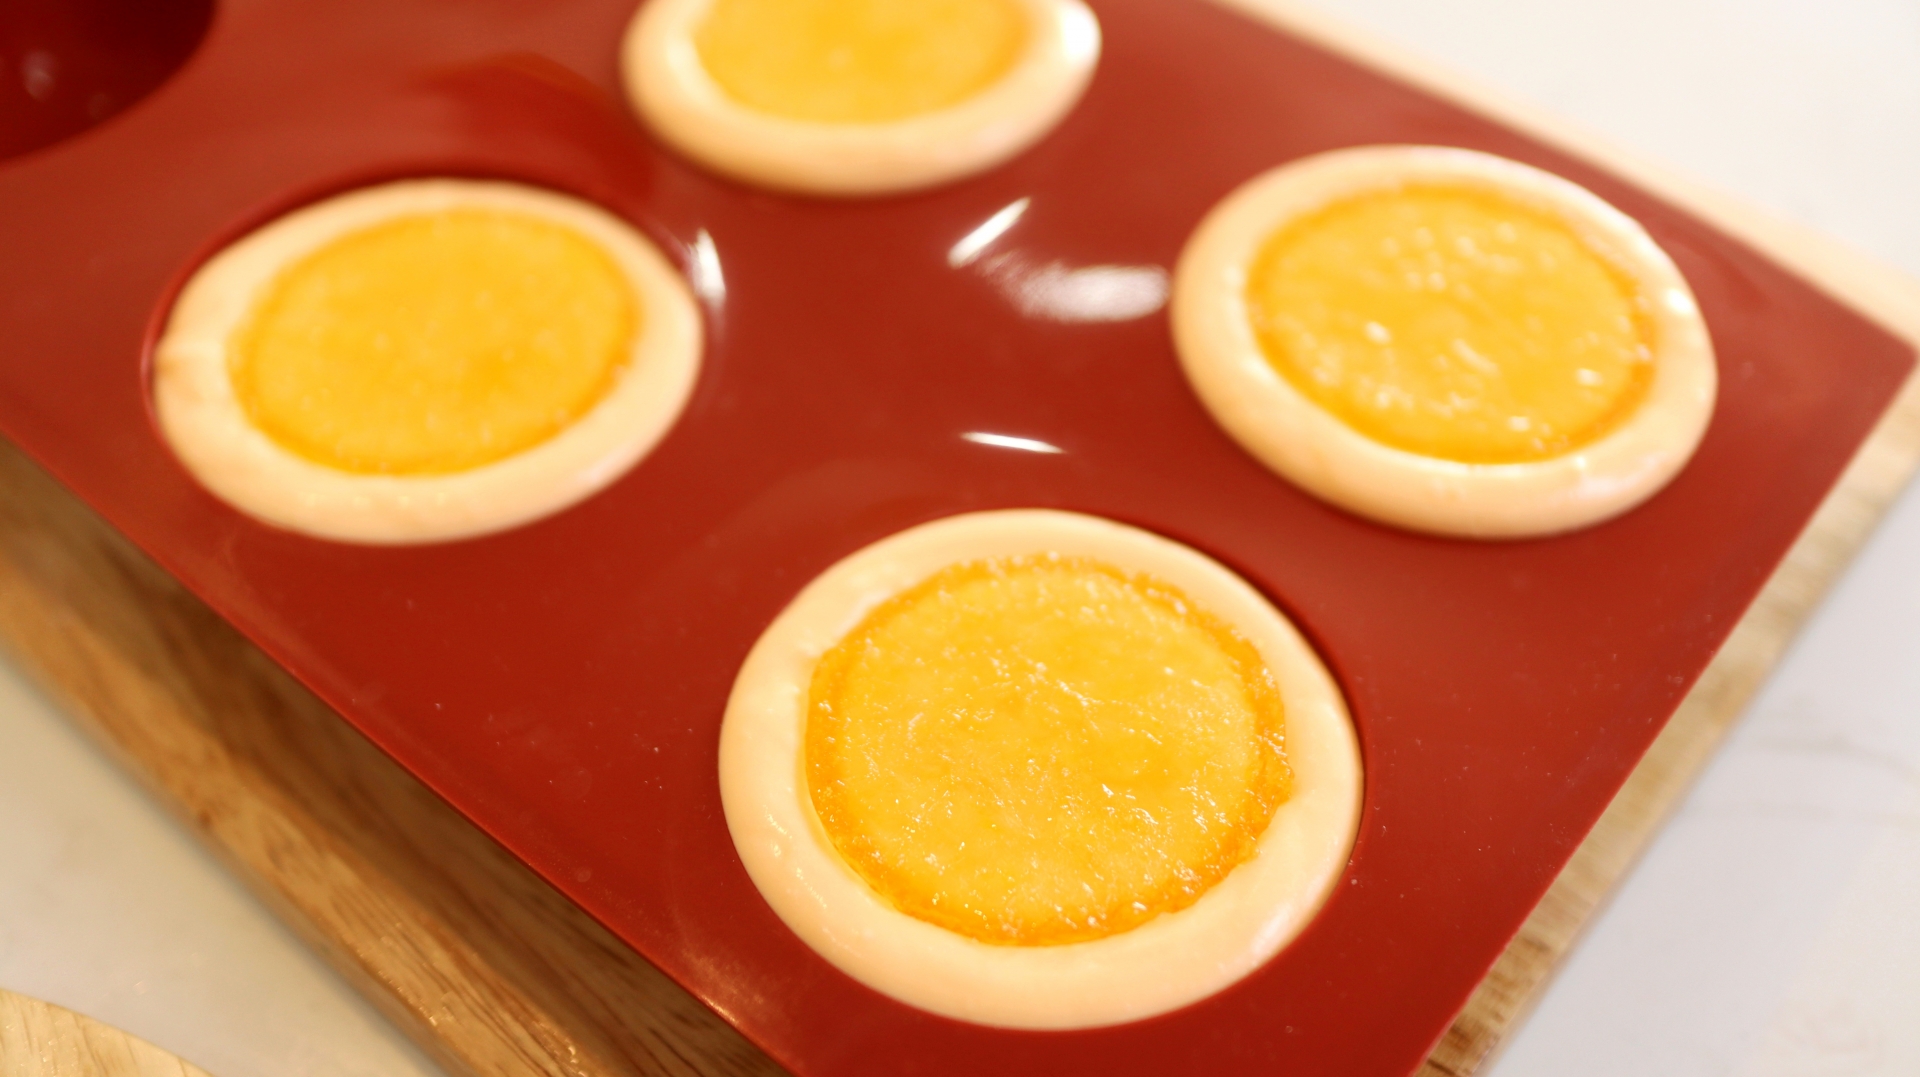 Ông bố Hà Nội hướng dẫn cách làm bánh phô mai thạch cam đẹp như cam thật - Ảnh 7